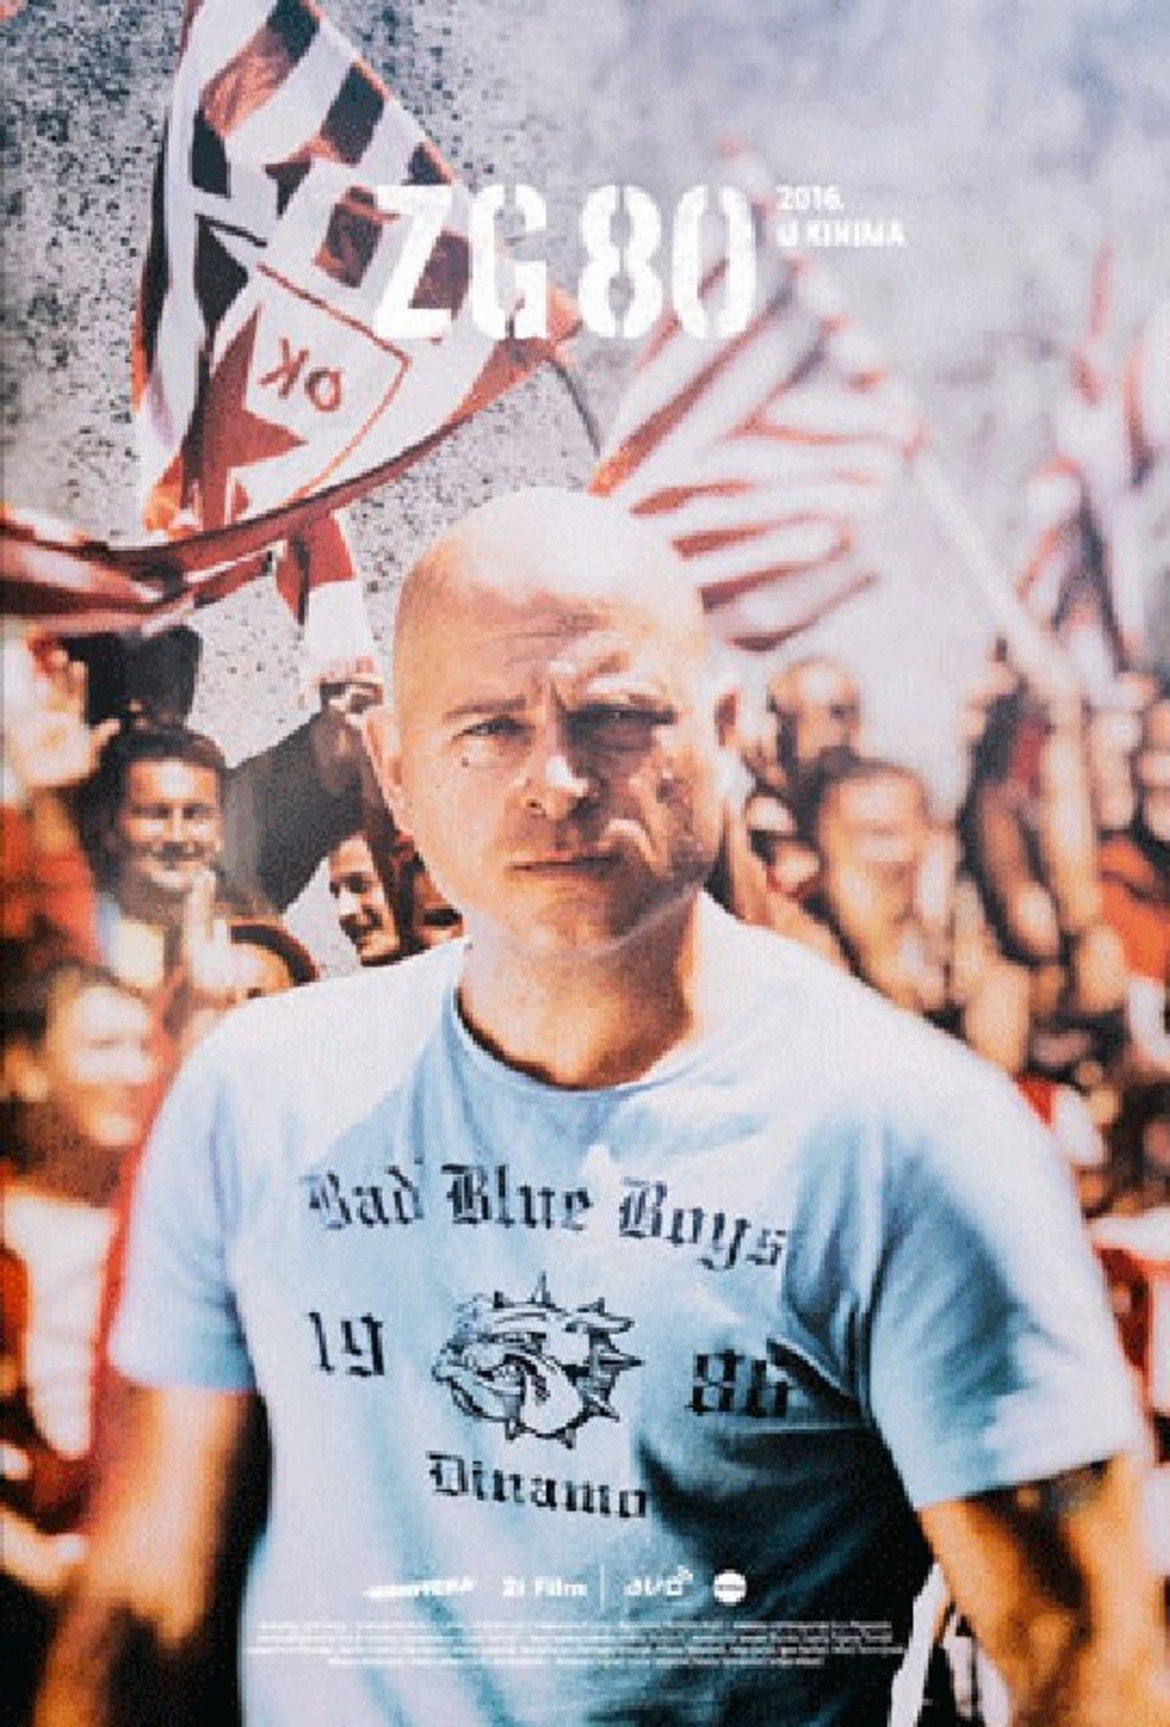 Zg80 (2016)
Още една балканска лента, която проследява събитията от гостуването на Динамо Загреб на Цървена Звезда в Белград през 1989 г. Bad Blue Boys е още млада групировка - само на 3 години - но дава заявка да стане една от най-страховитите на континента.
